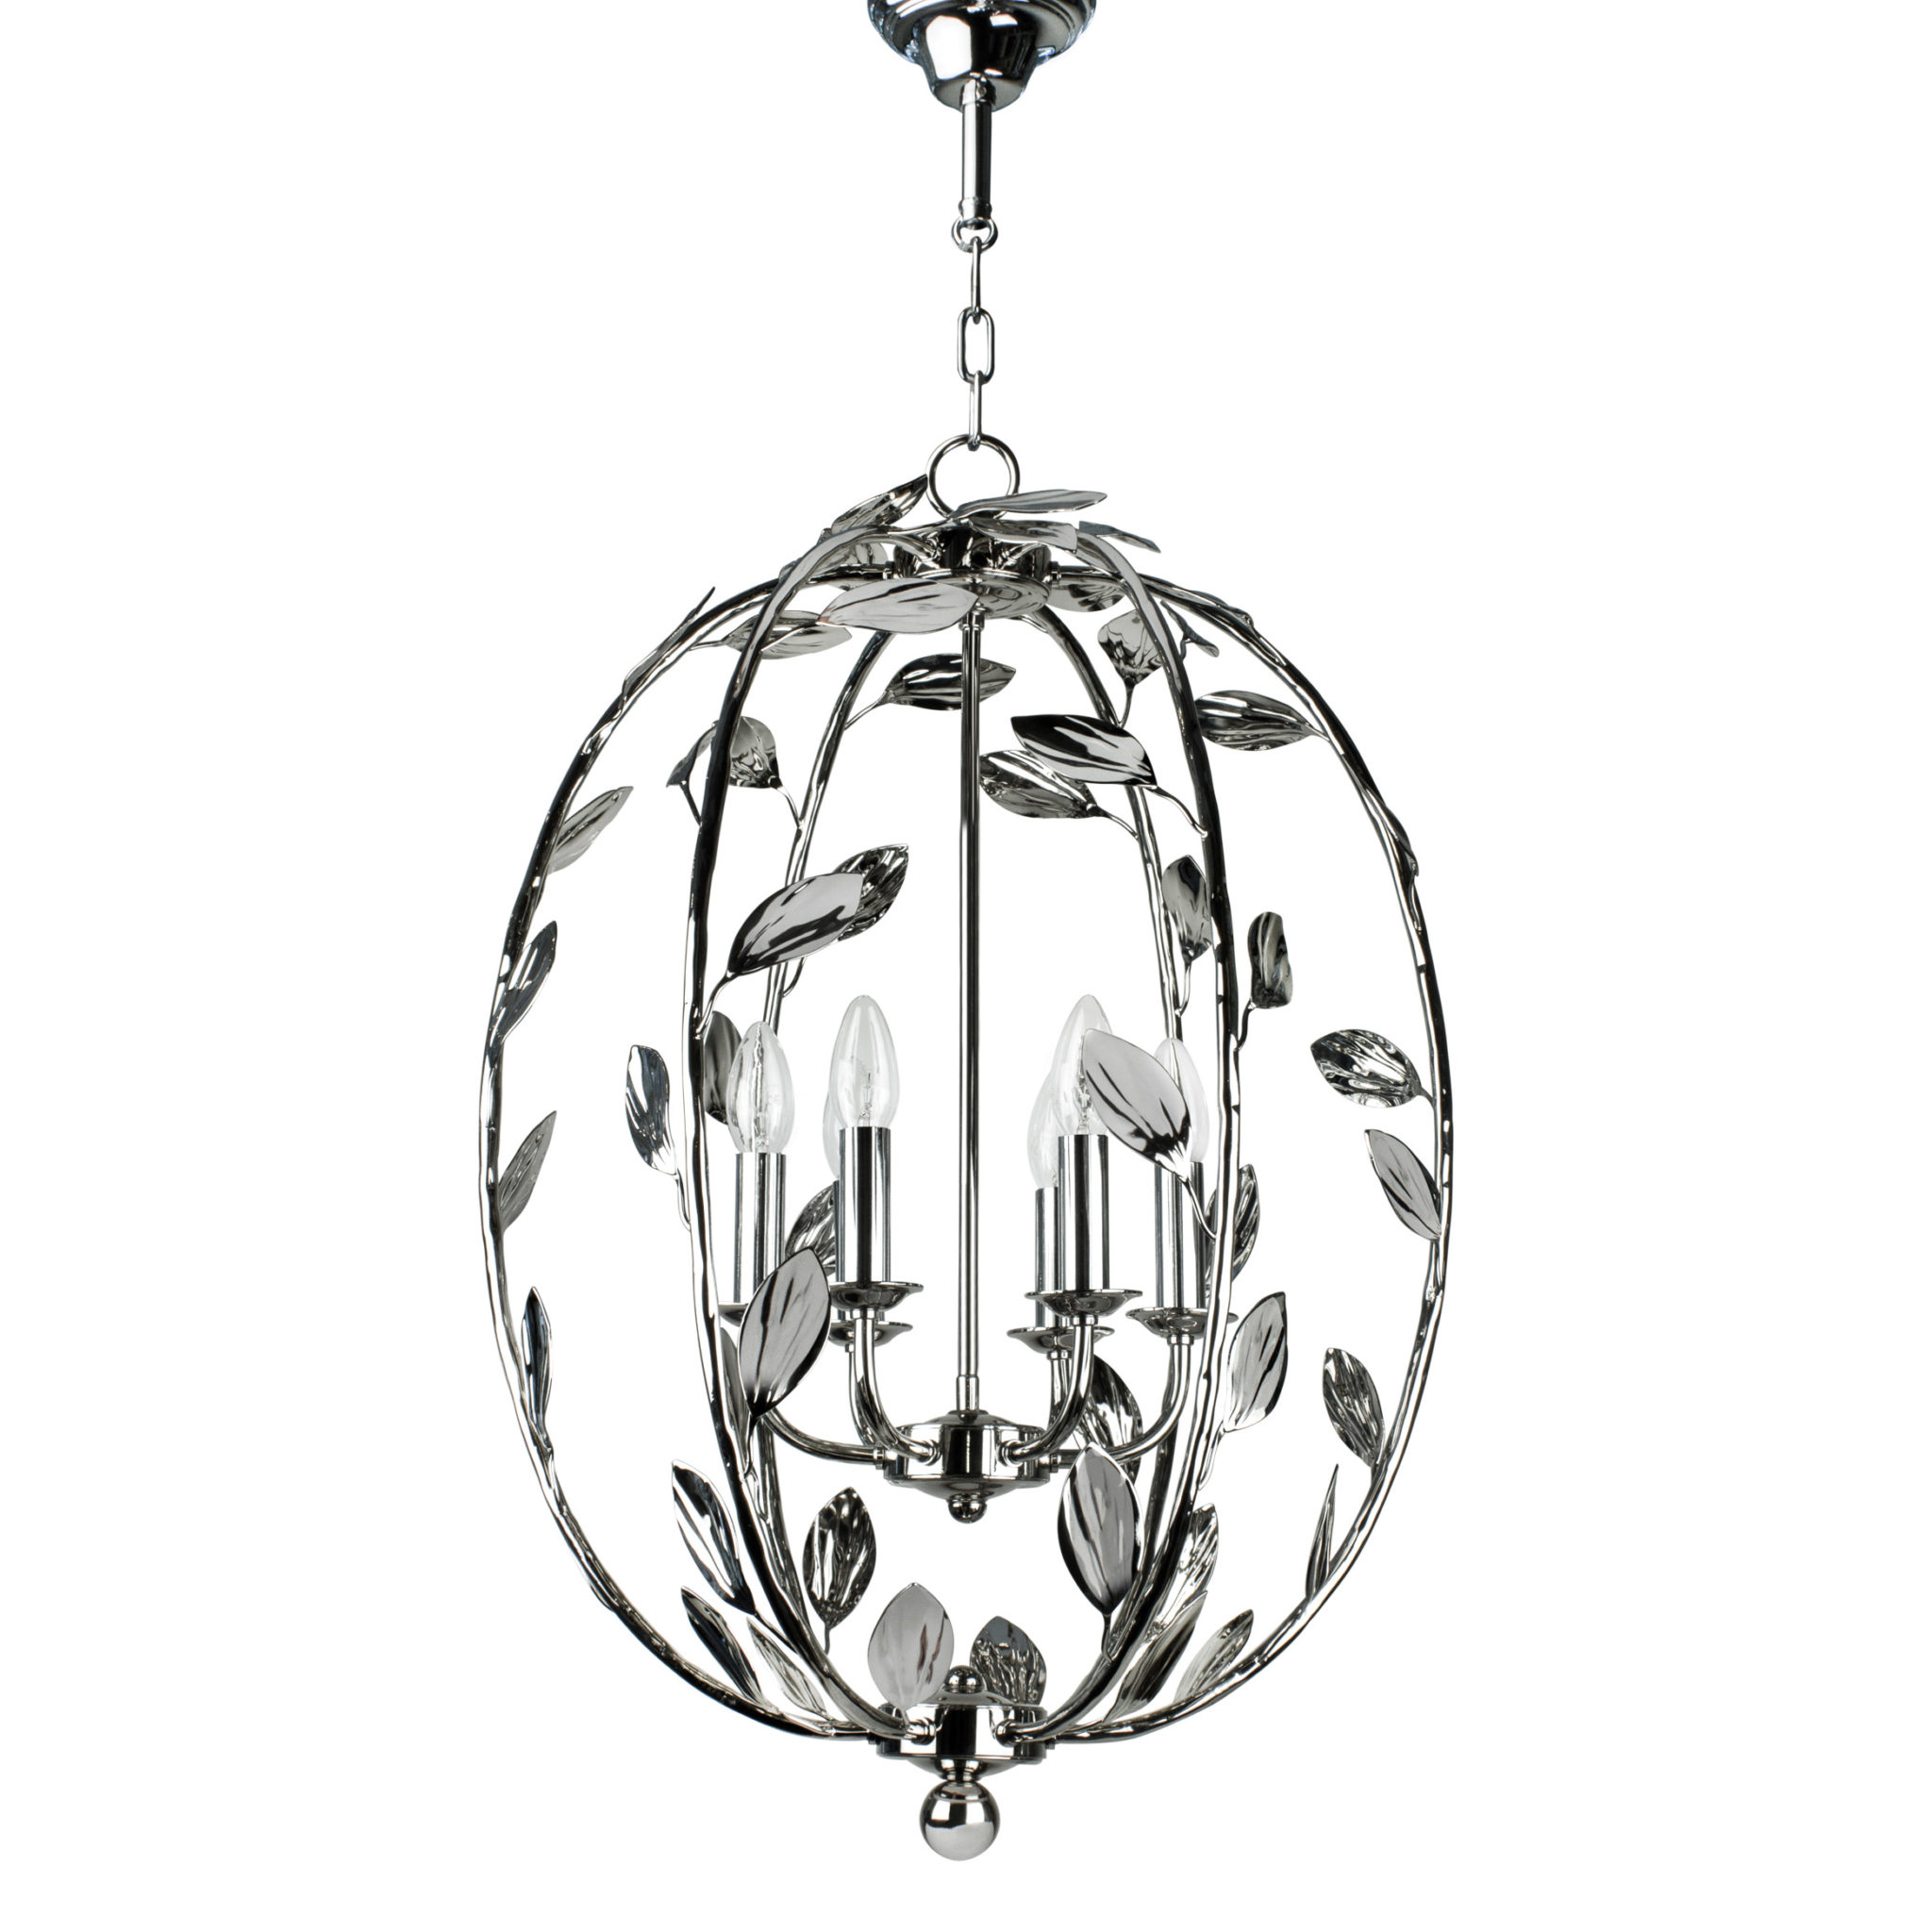 Купить Подвесной светильник Foliage Oval в интернет-магазине roooms.ru